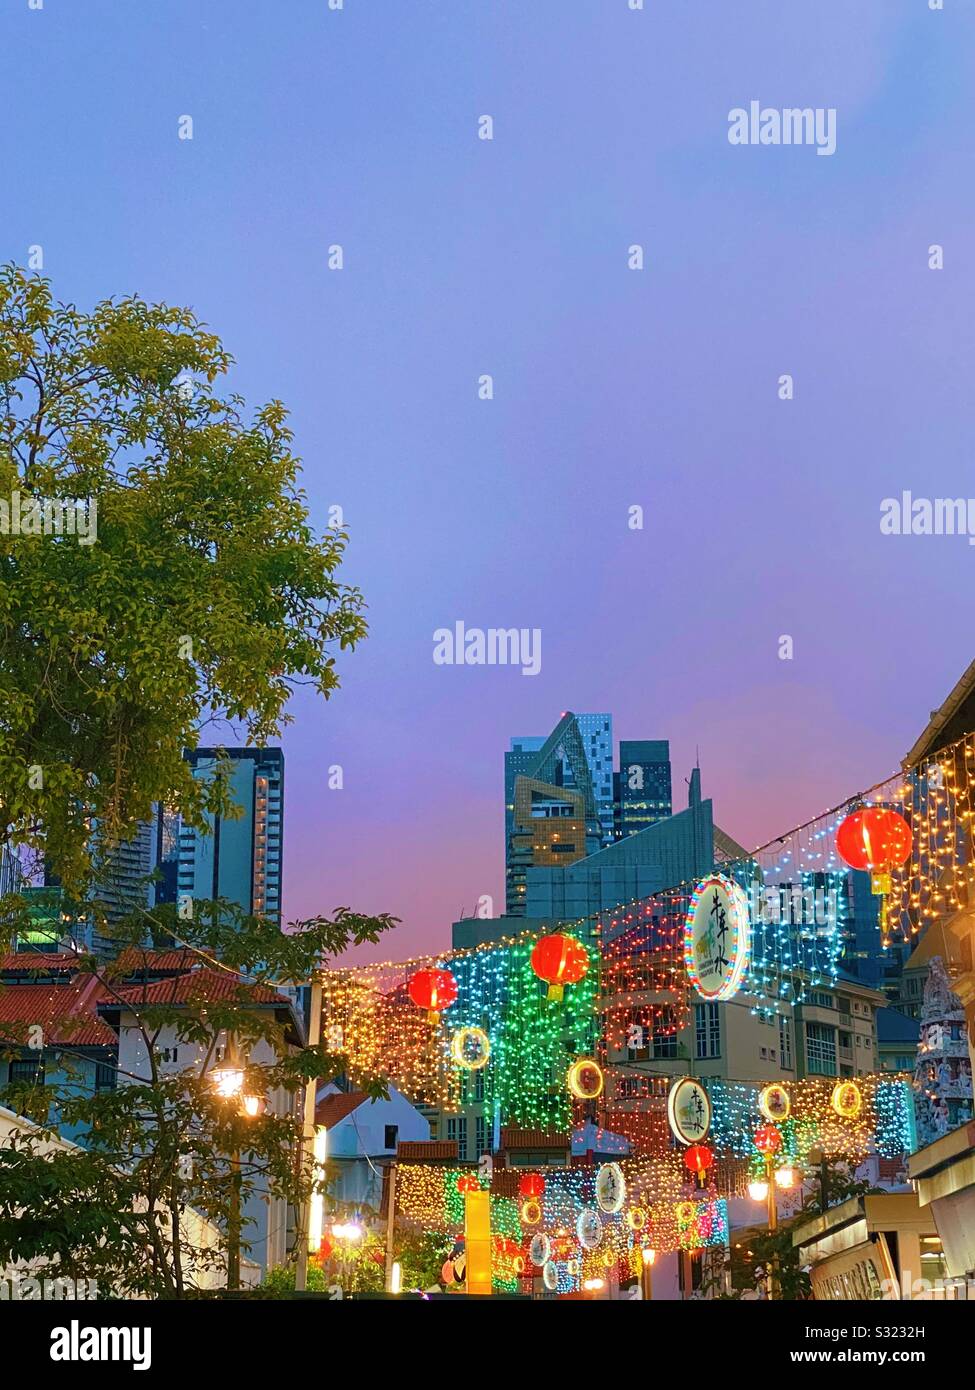 Lumières et couleurs du Nouvel An chinois dans le quartier chinois de Singapour. Janvier 2020 Banque D'Images